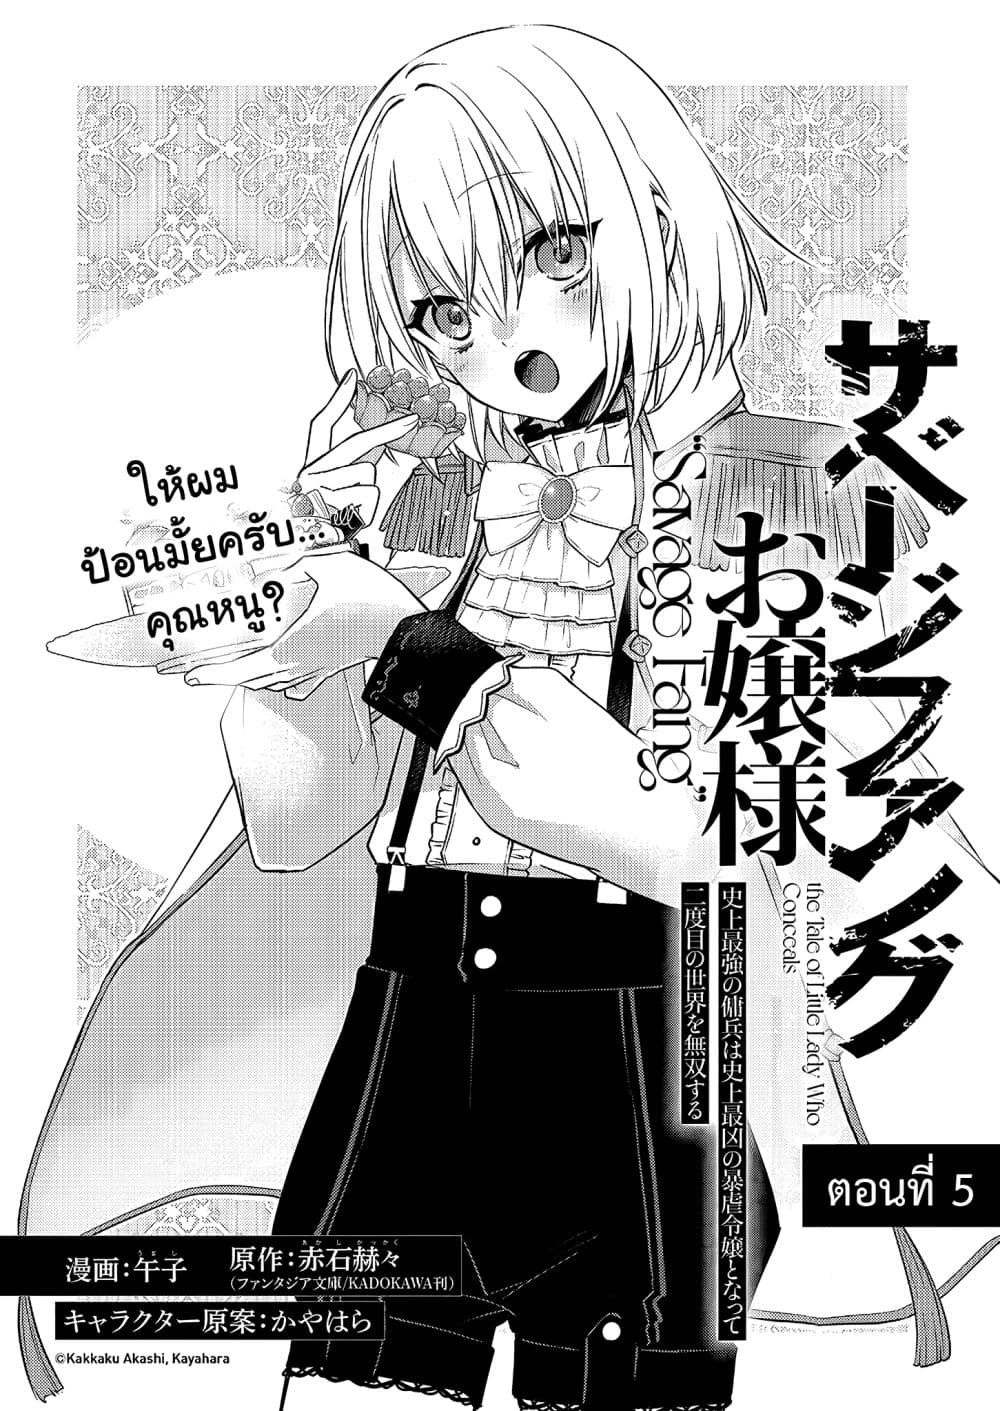 Savage Fang Ojou-sama: Shijou Saikyou no Youhei wa Shijou Saikyou no  Bougyaku Reijou to Natte ni Dome no Sekai wo Musou Suru Manga Reviews